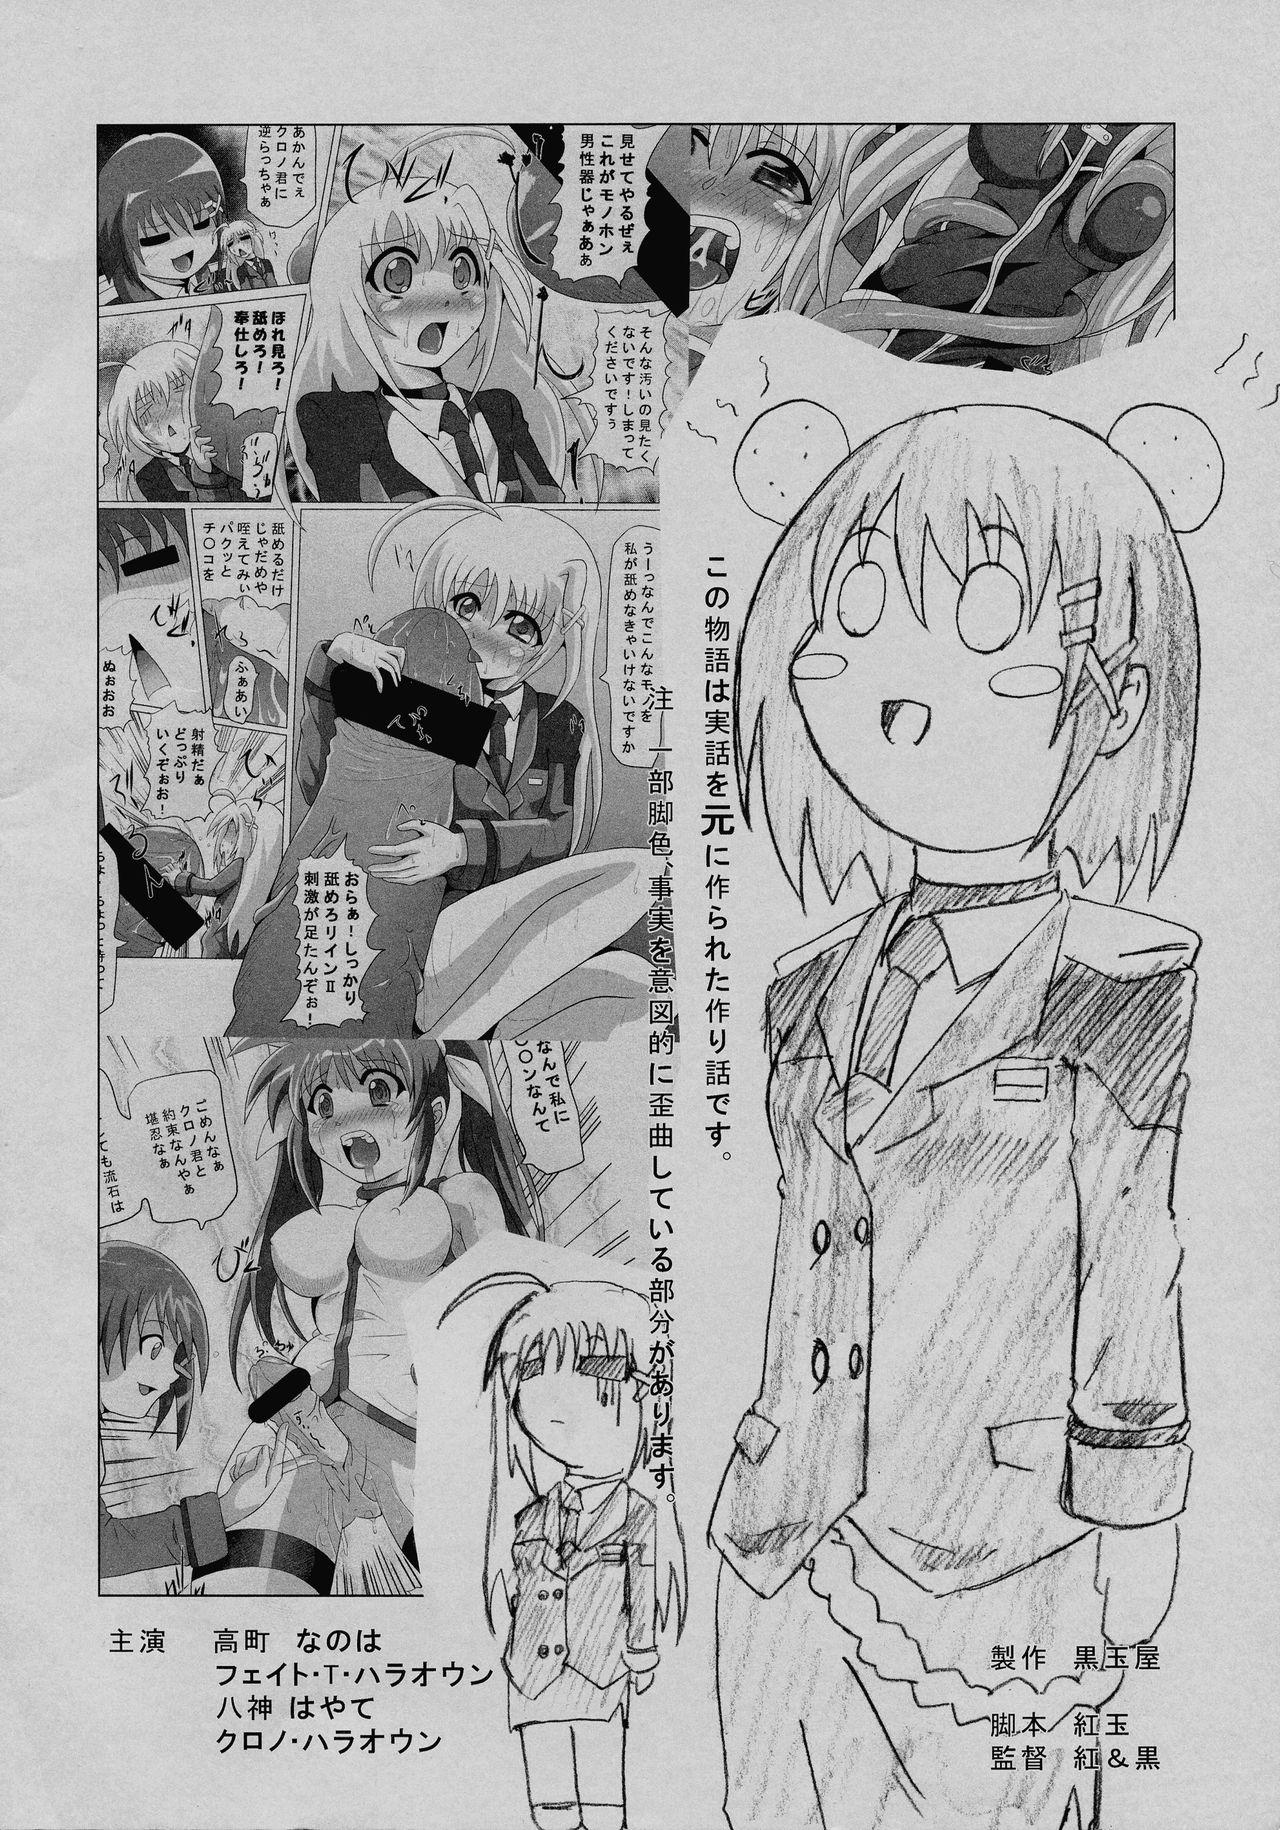 Gritona O*nchi* Bare Kai -Rokka Setsuritsu eno Kiseki to Sonogo - Mahou shoujo lyrical nanoha Sesso - Page 2